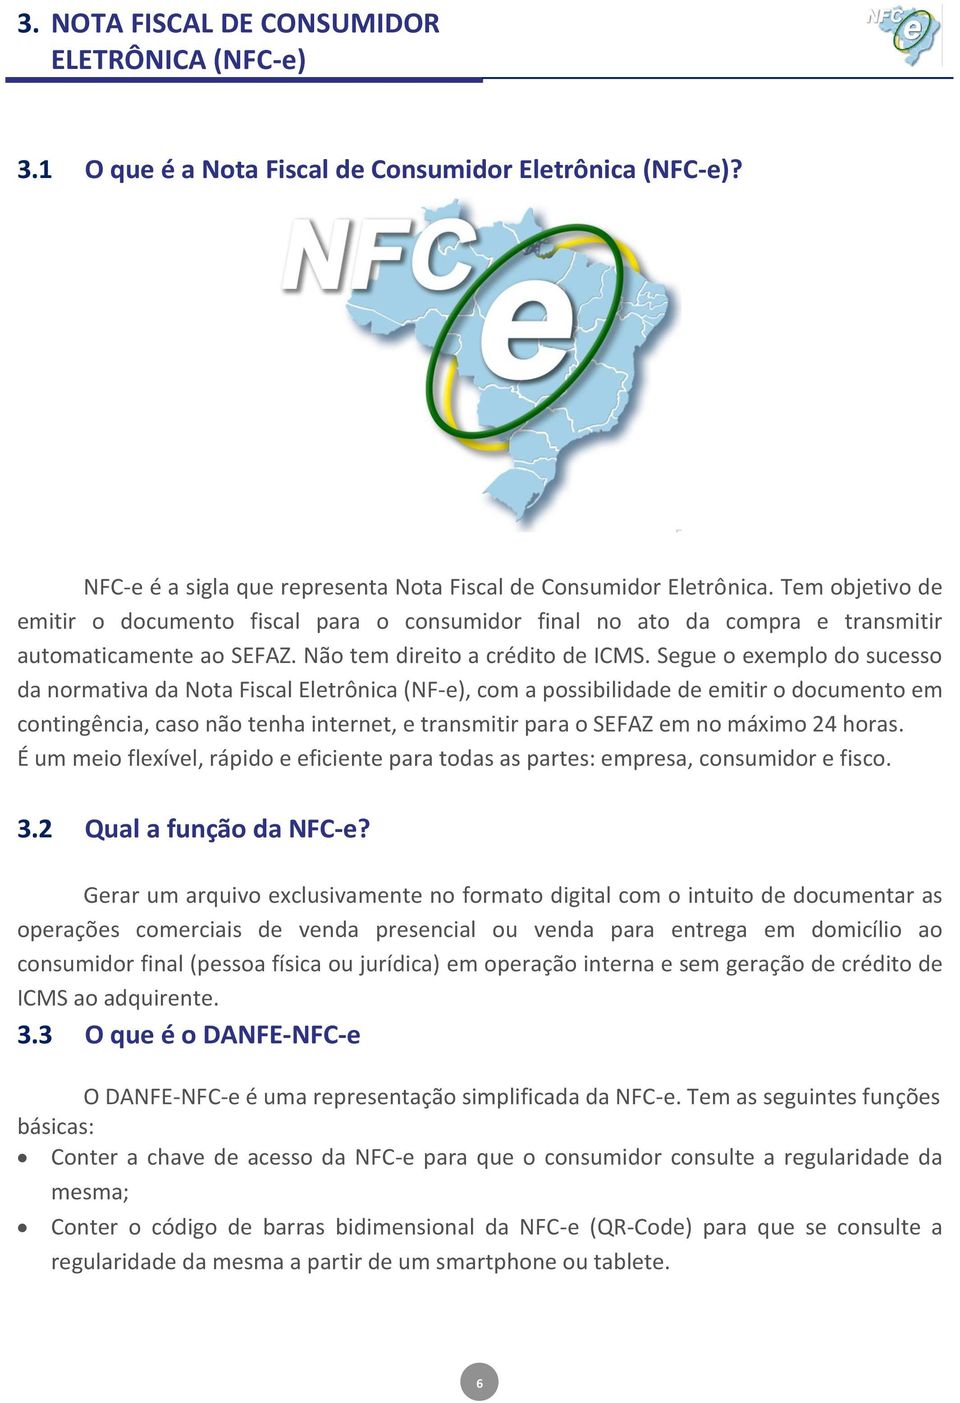 Segue o exemplo do sucesso da normativa da Nota Fiscal Eletrônica (NF-e), com a possibilidade de emitir o documento em contingência, caso não tenha internet, e transmitir para o SEFAZ em no máximo 24